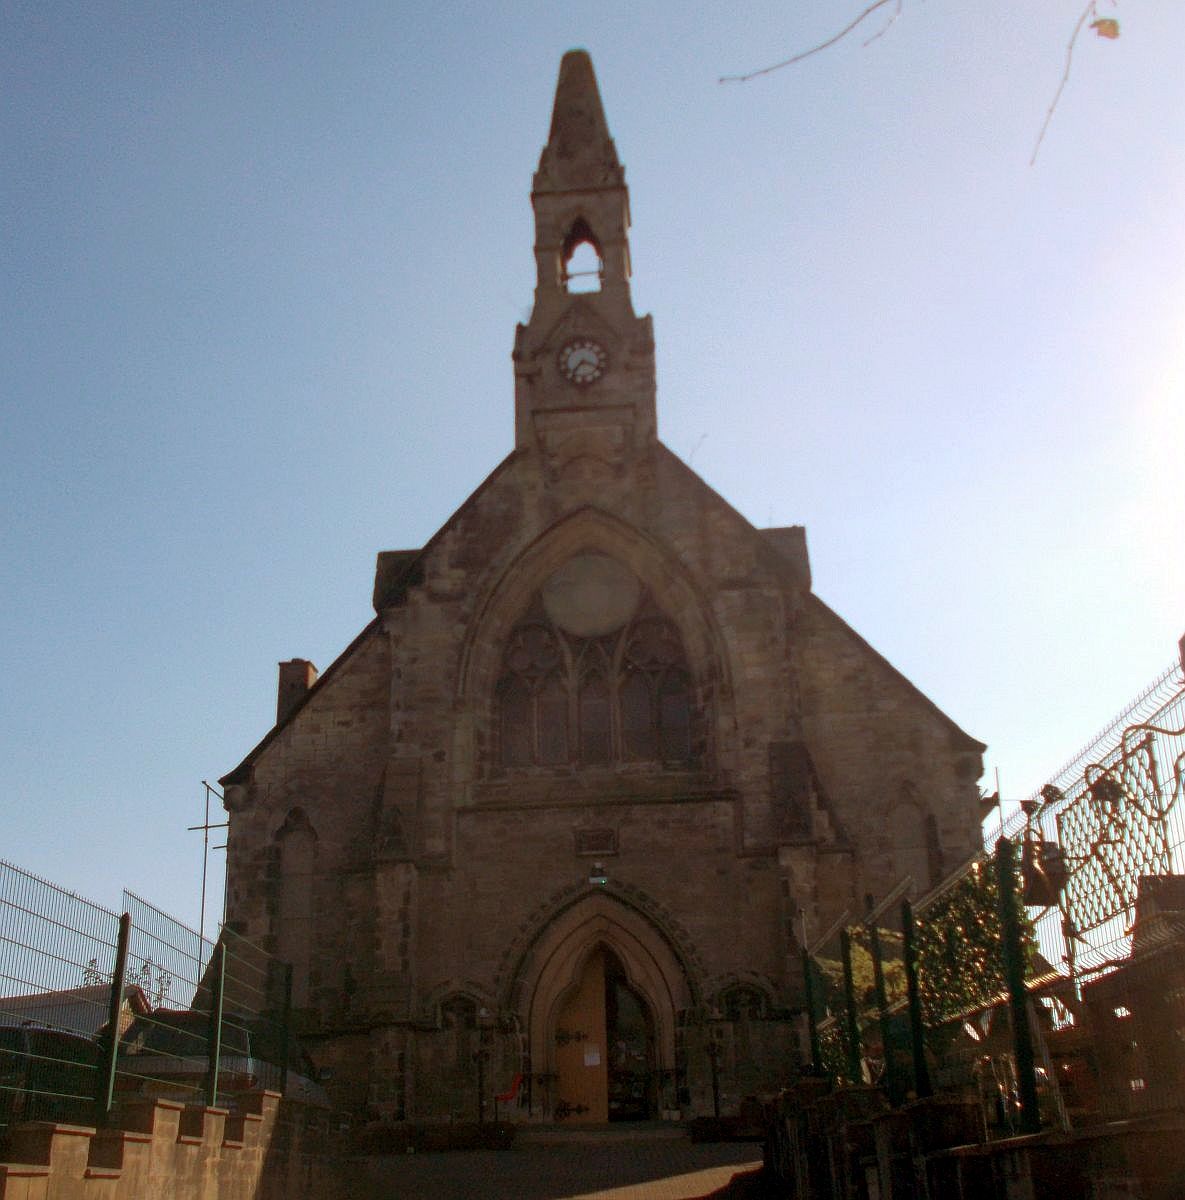 Church in Kilwinning